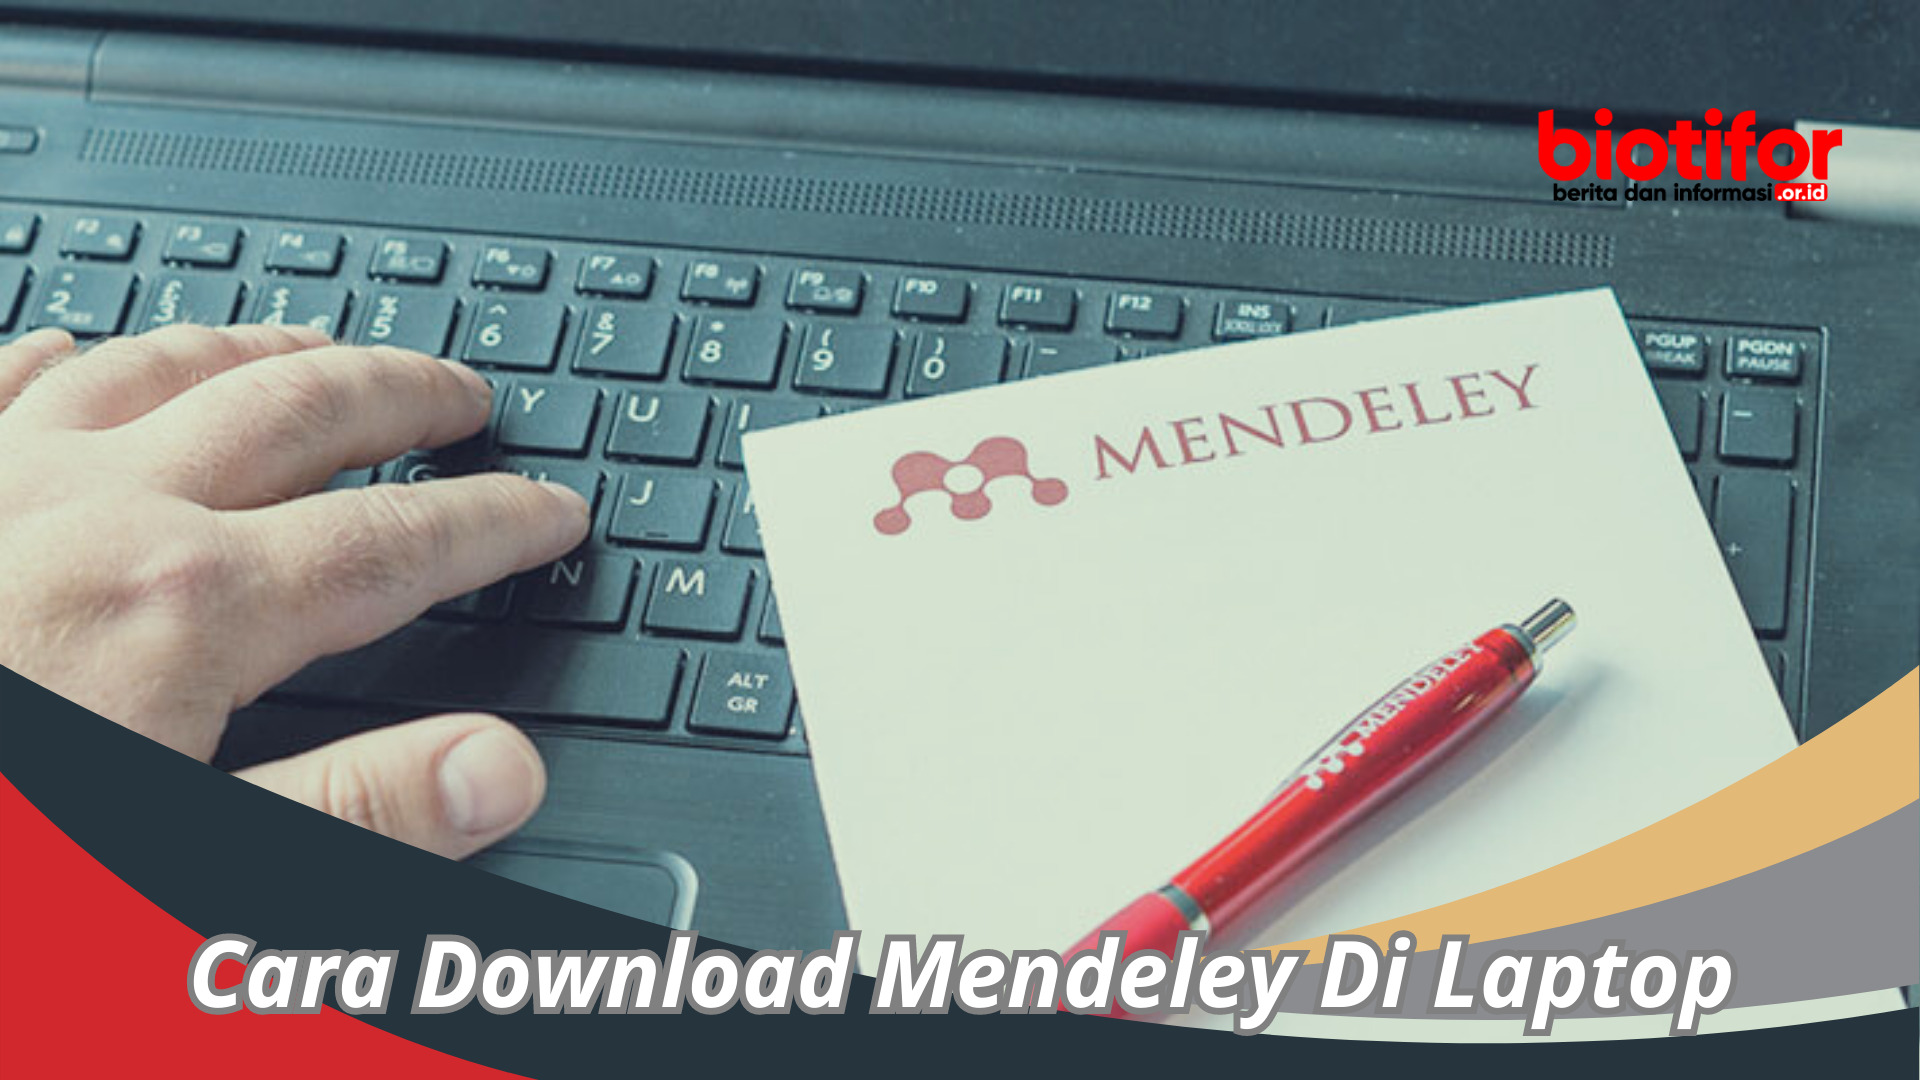 Cara Download Mendeley Di Laptop